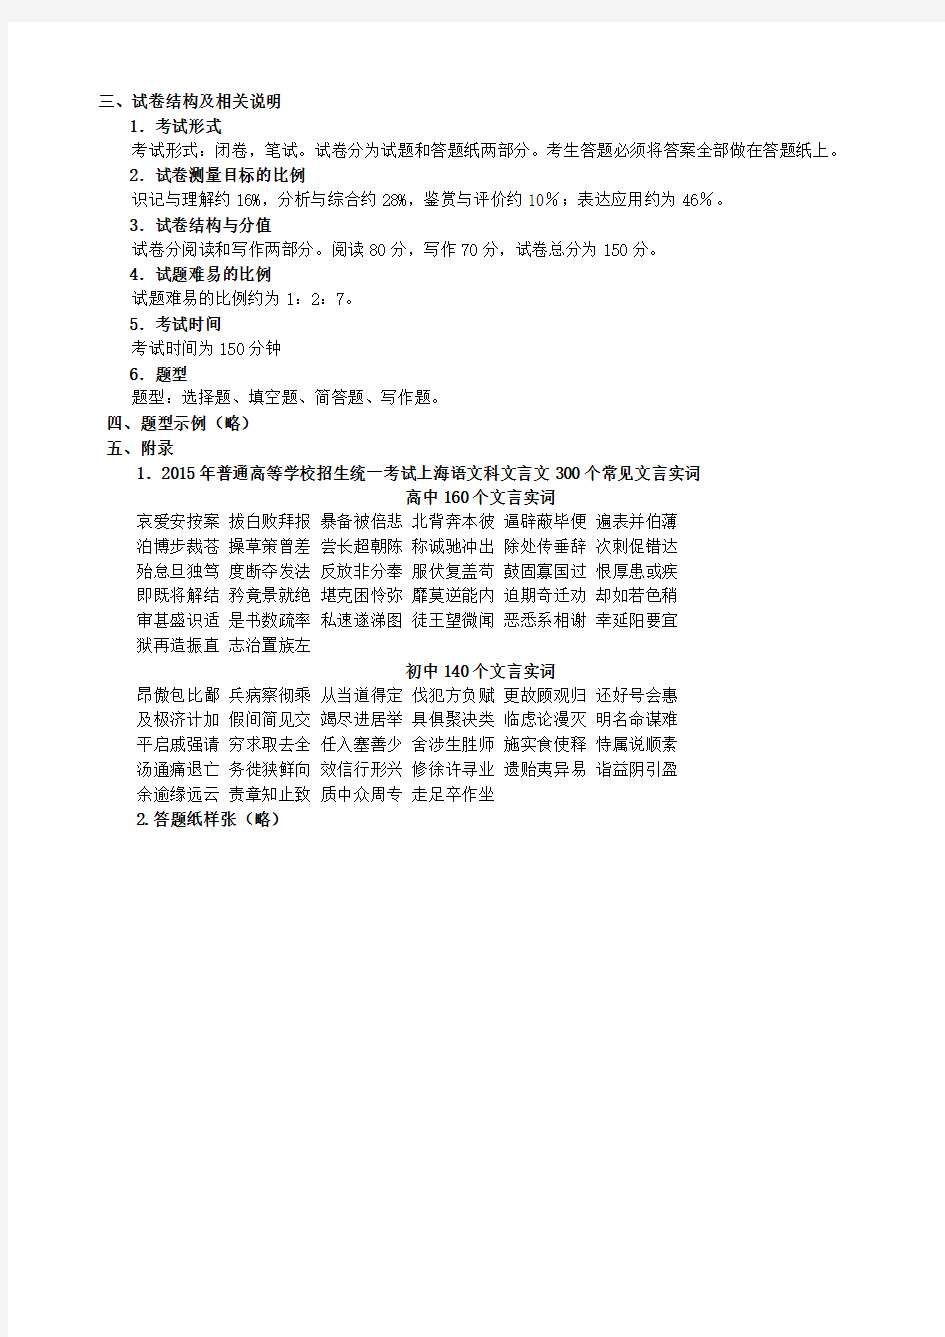 2015年高考上海卷语文学科考试手册